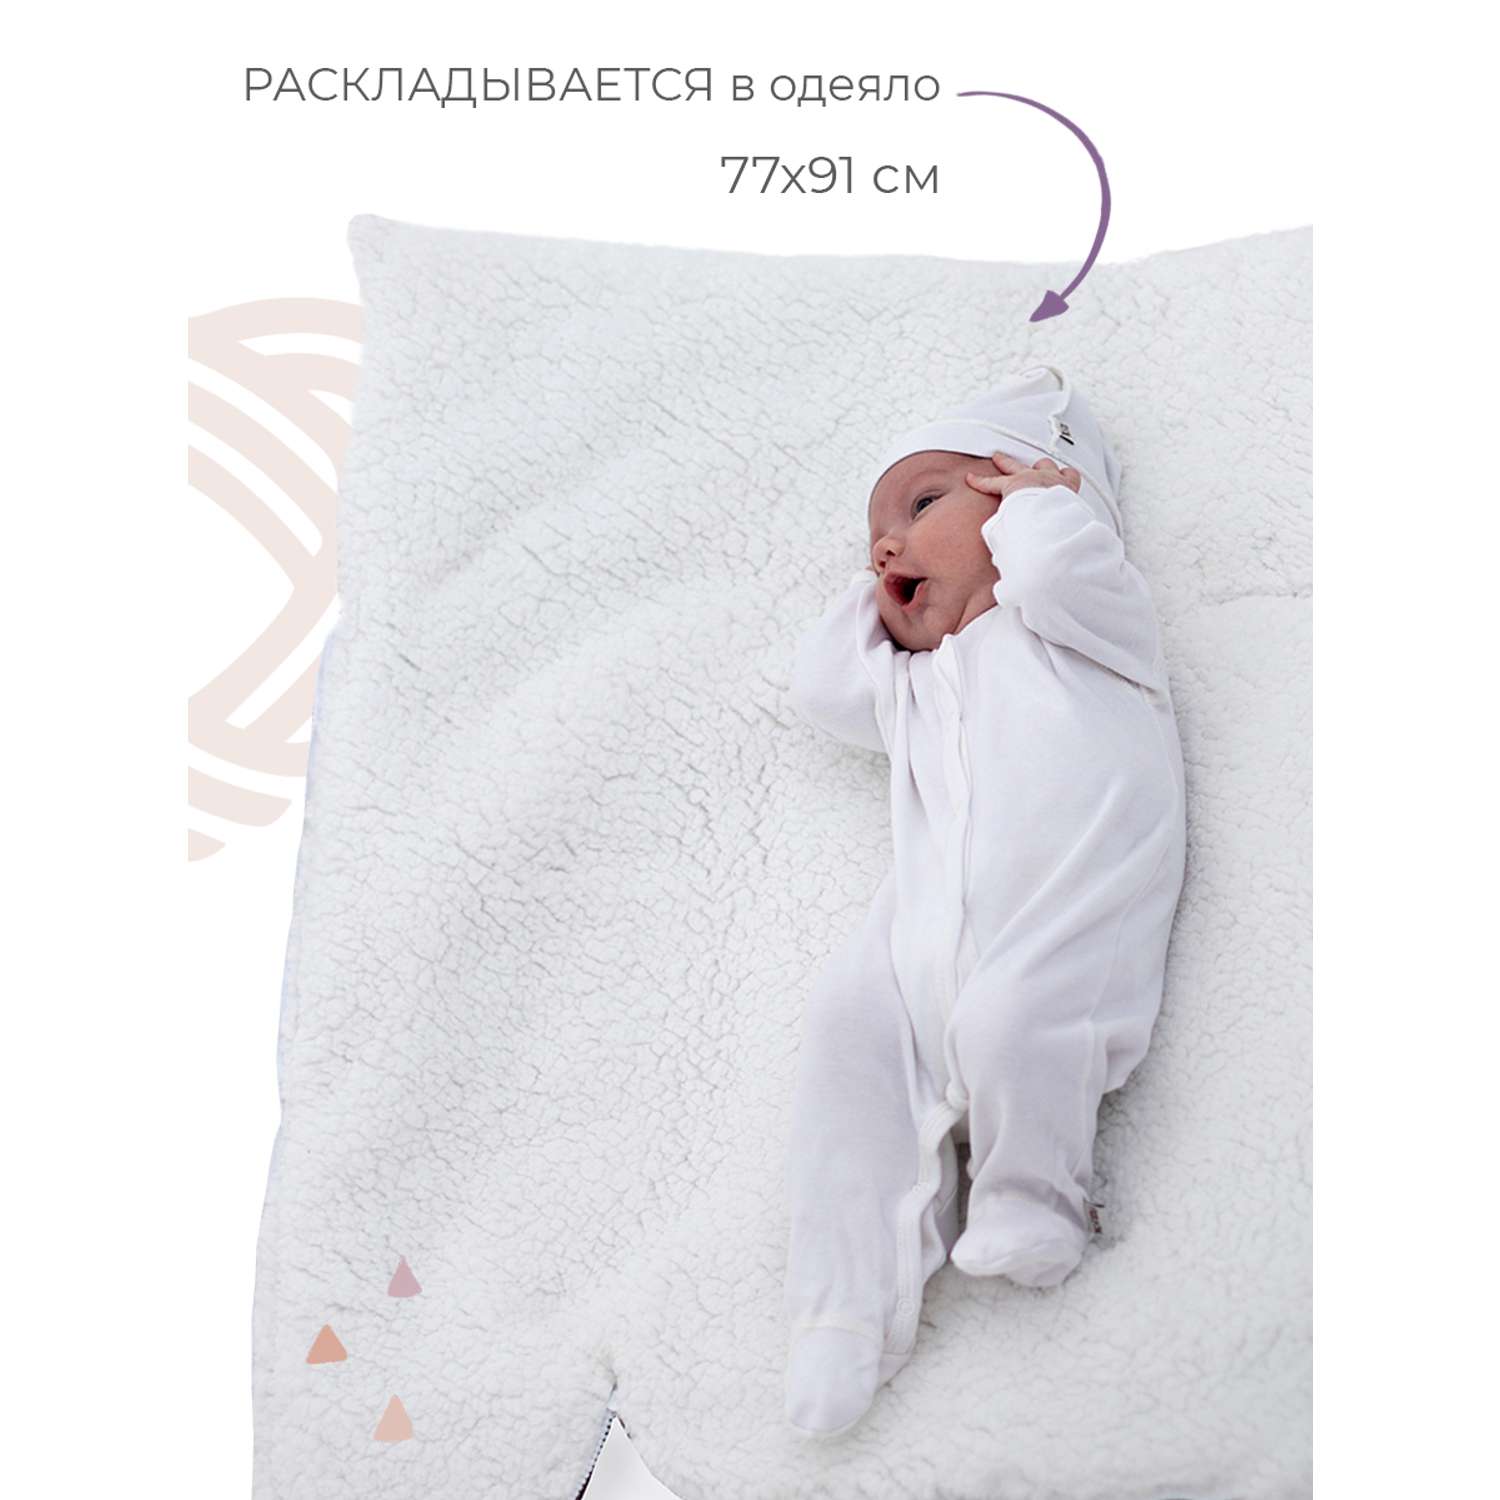 Конверт в коляску inlovery для новорожденного «Нортес» серый - фото 5